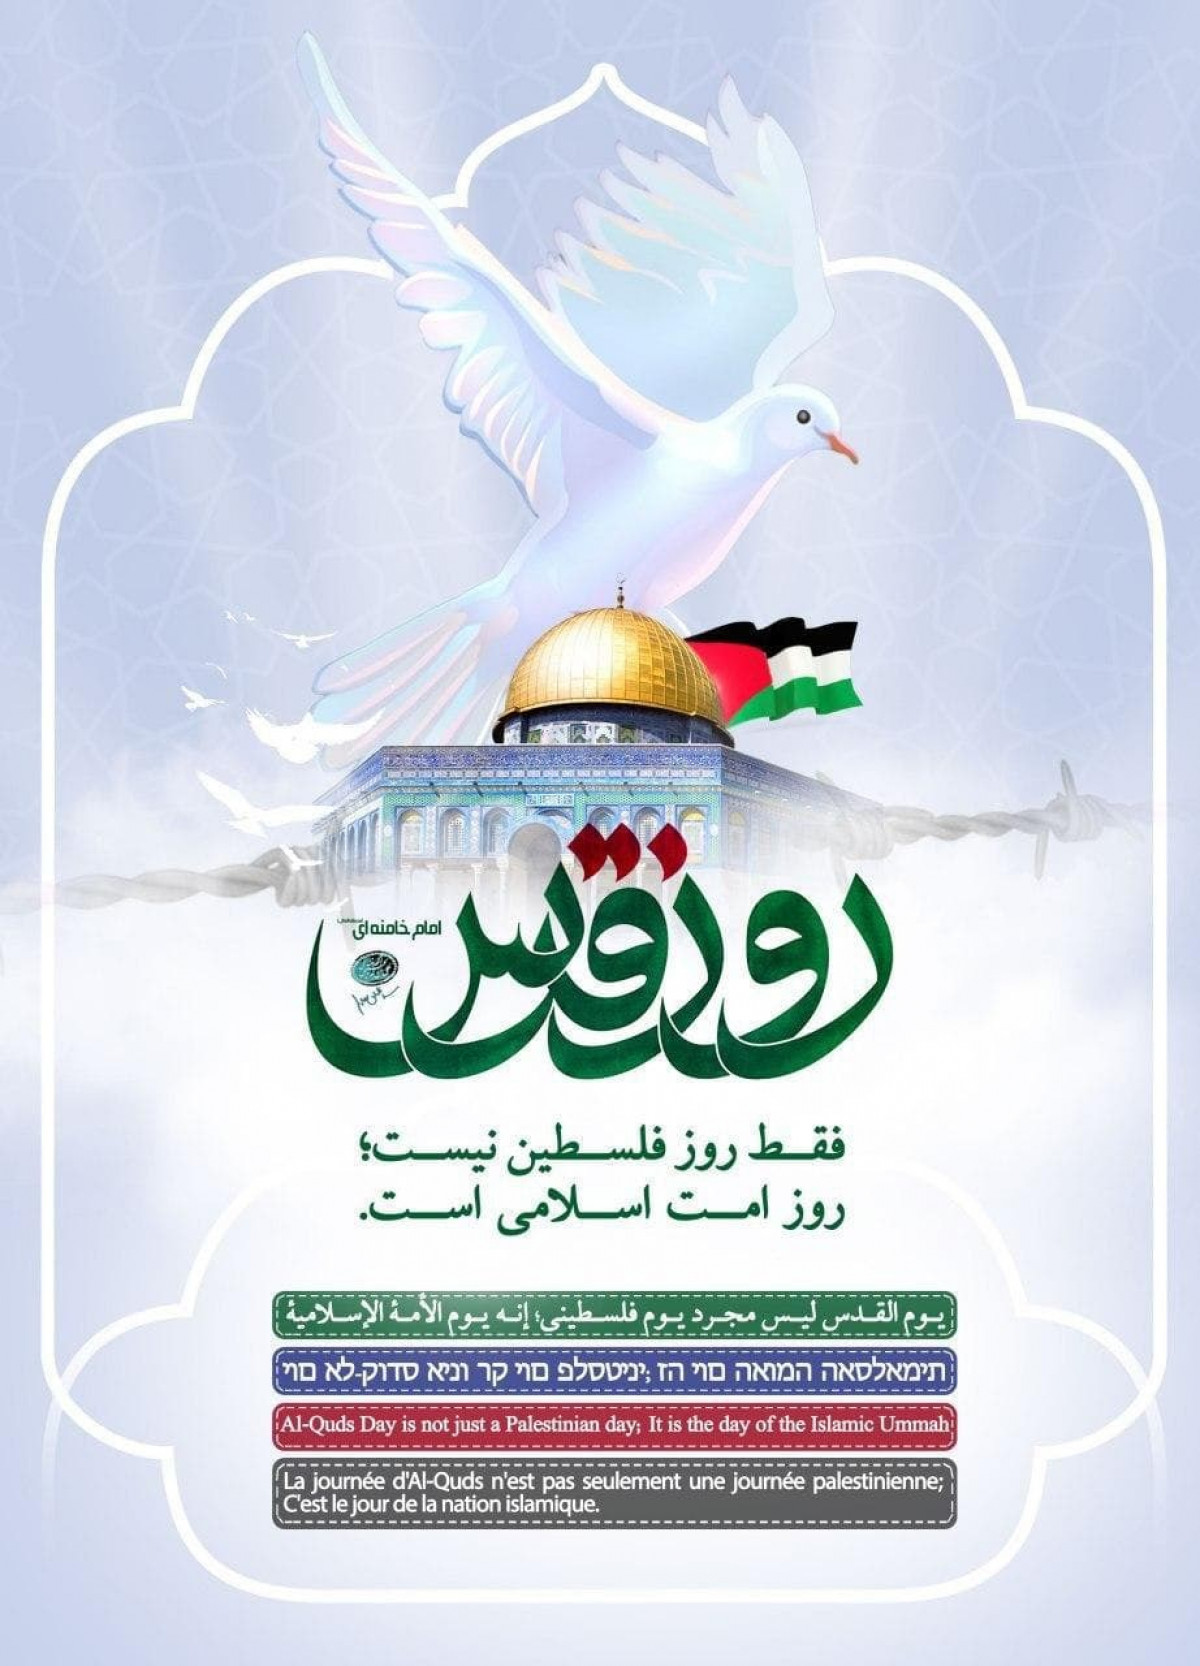 ّيوم القدس ليس مجرد يوم فلسطيني ،إنه يوم الأمة الإسلامية ّ -سماحة القائد السيد علي خامنئي